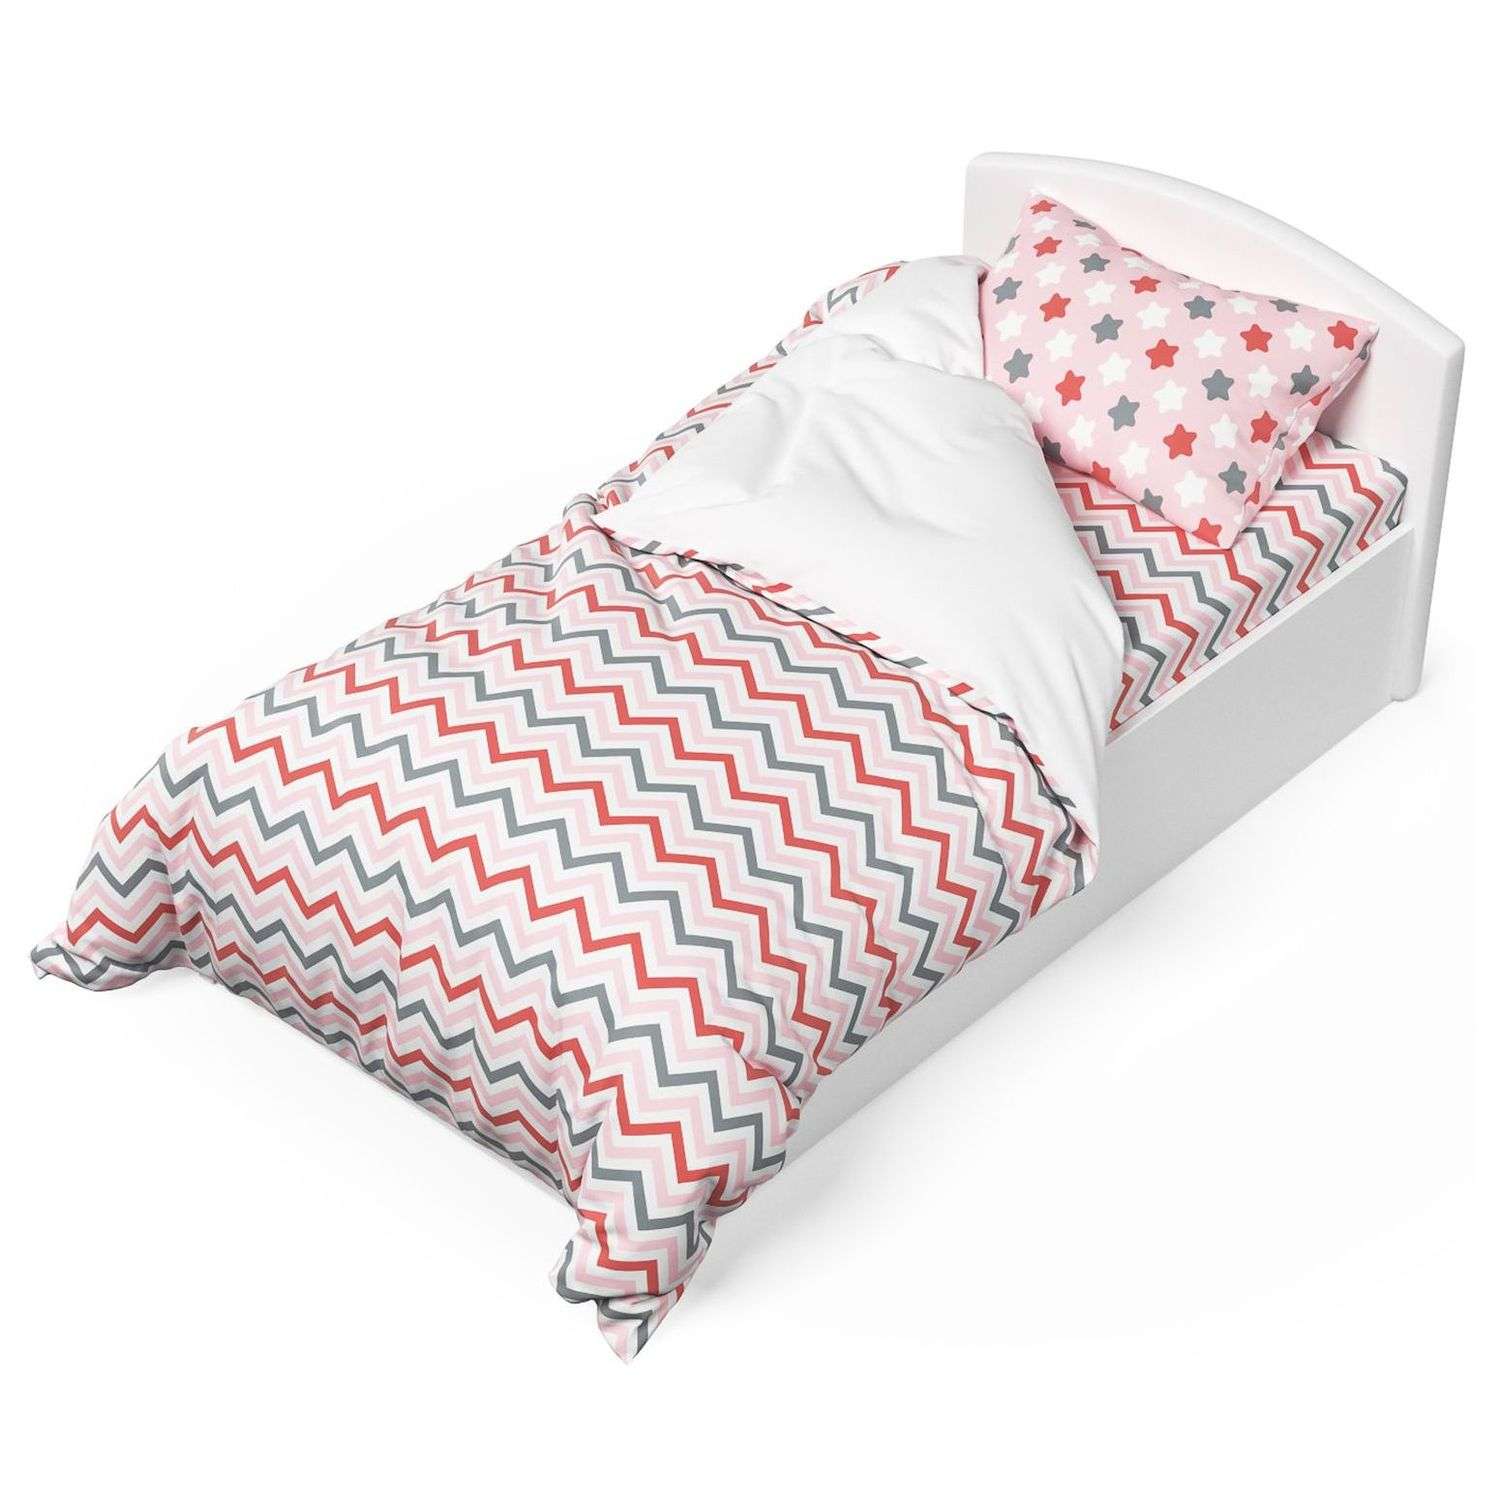 Комплект постельного белья Капризун Розовый мир 1.5спальный 3предмета - фото 1